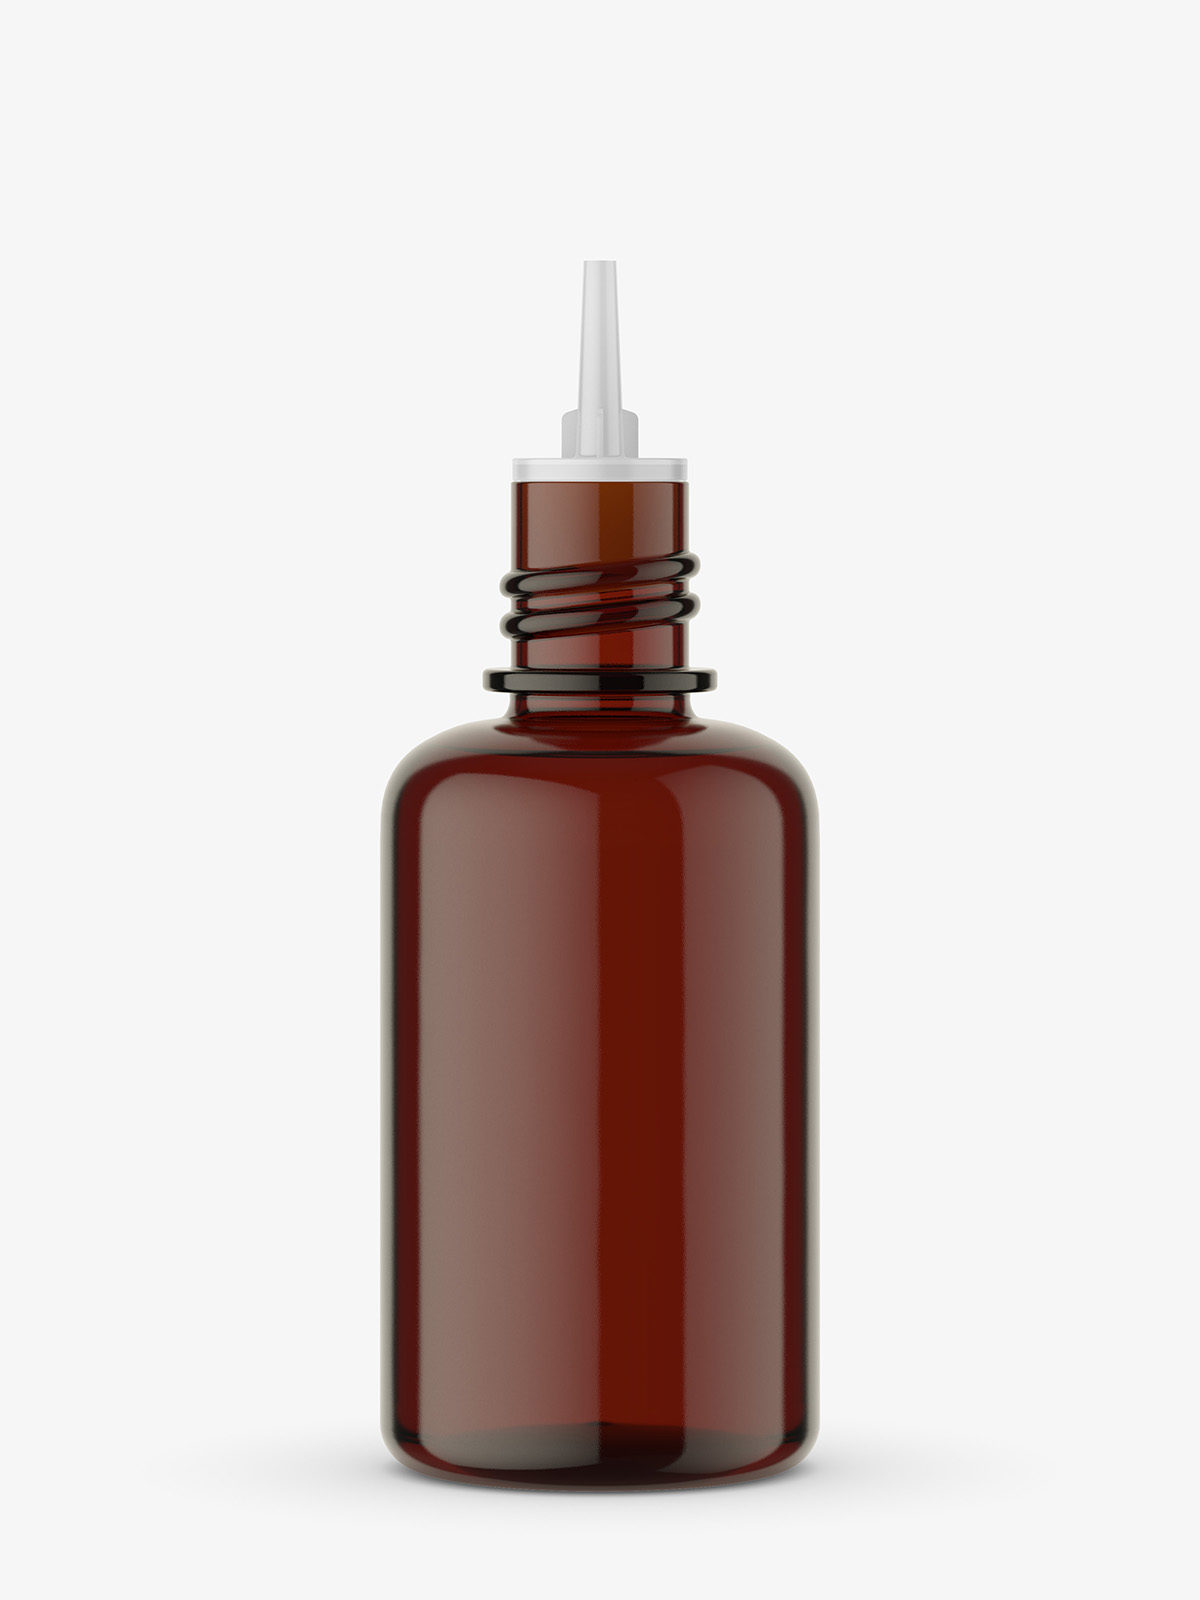 Download Amber dropper bottle mockup - Smarty Mockups